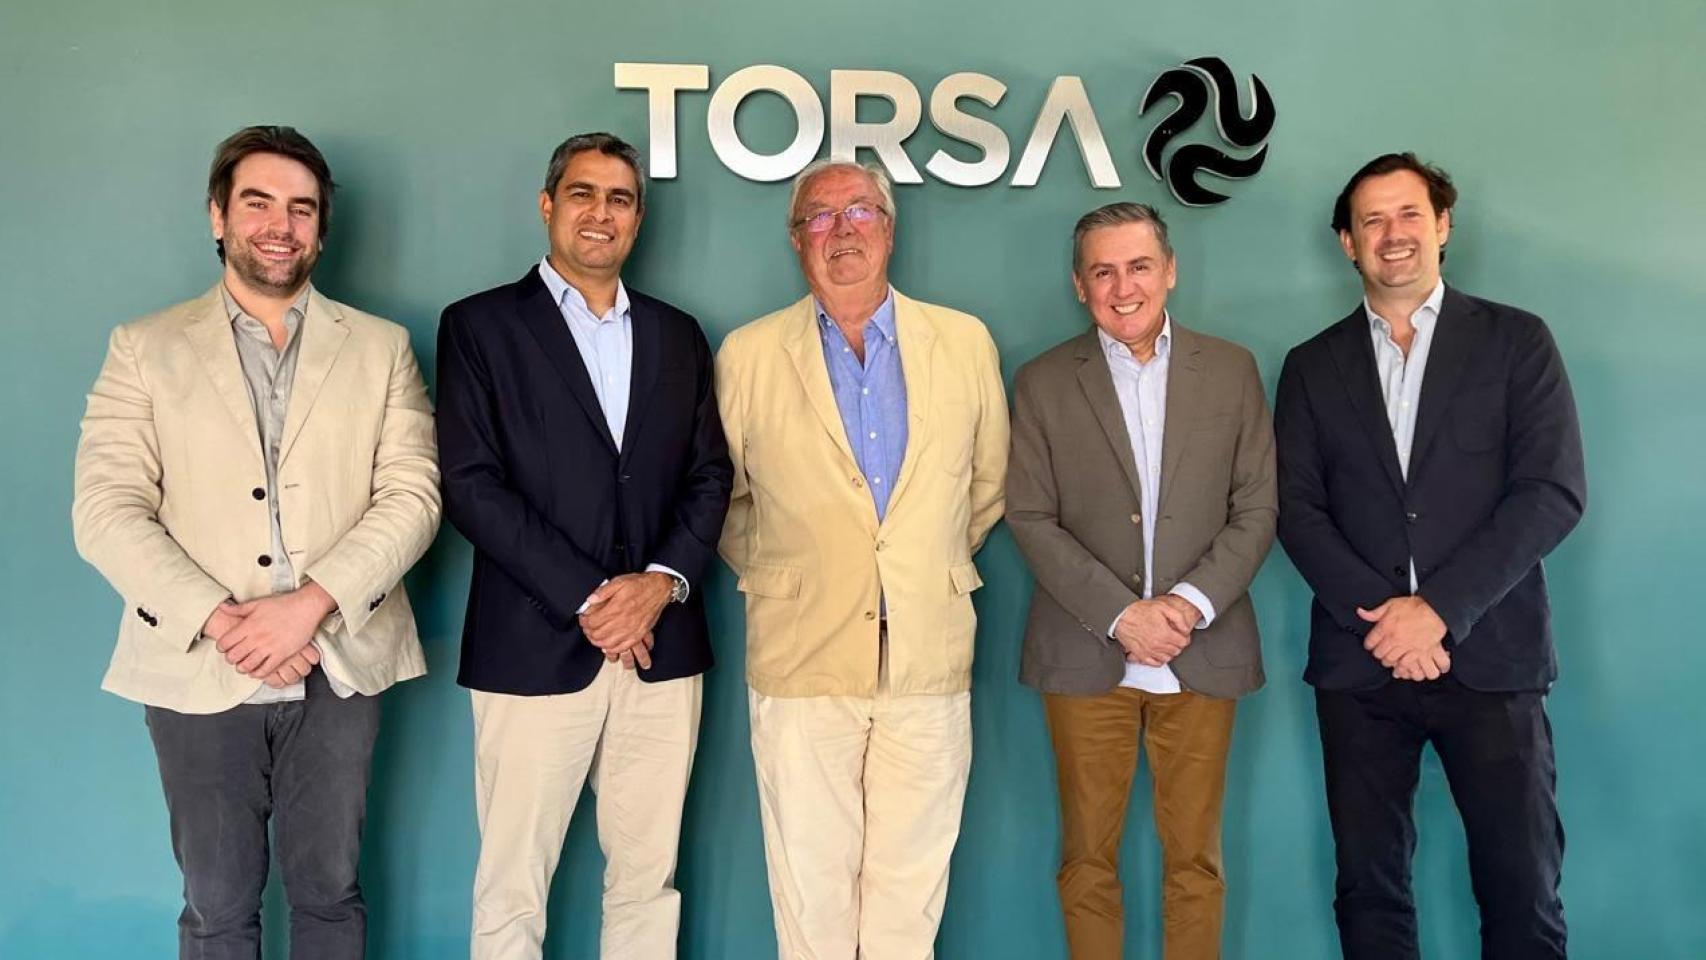 Raúl Santana (CEO de  Torsa); Daniel Macedo (Gerente corporativo de Estrategia y Desarrollo de Ferreycorp); Mariano Barroso Flores (Presidente de Torsa); Carlos Calderón, CEO de Vixora; y Mariano Barroso Pidal, vicepresidente de Torsa)